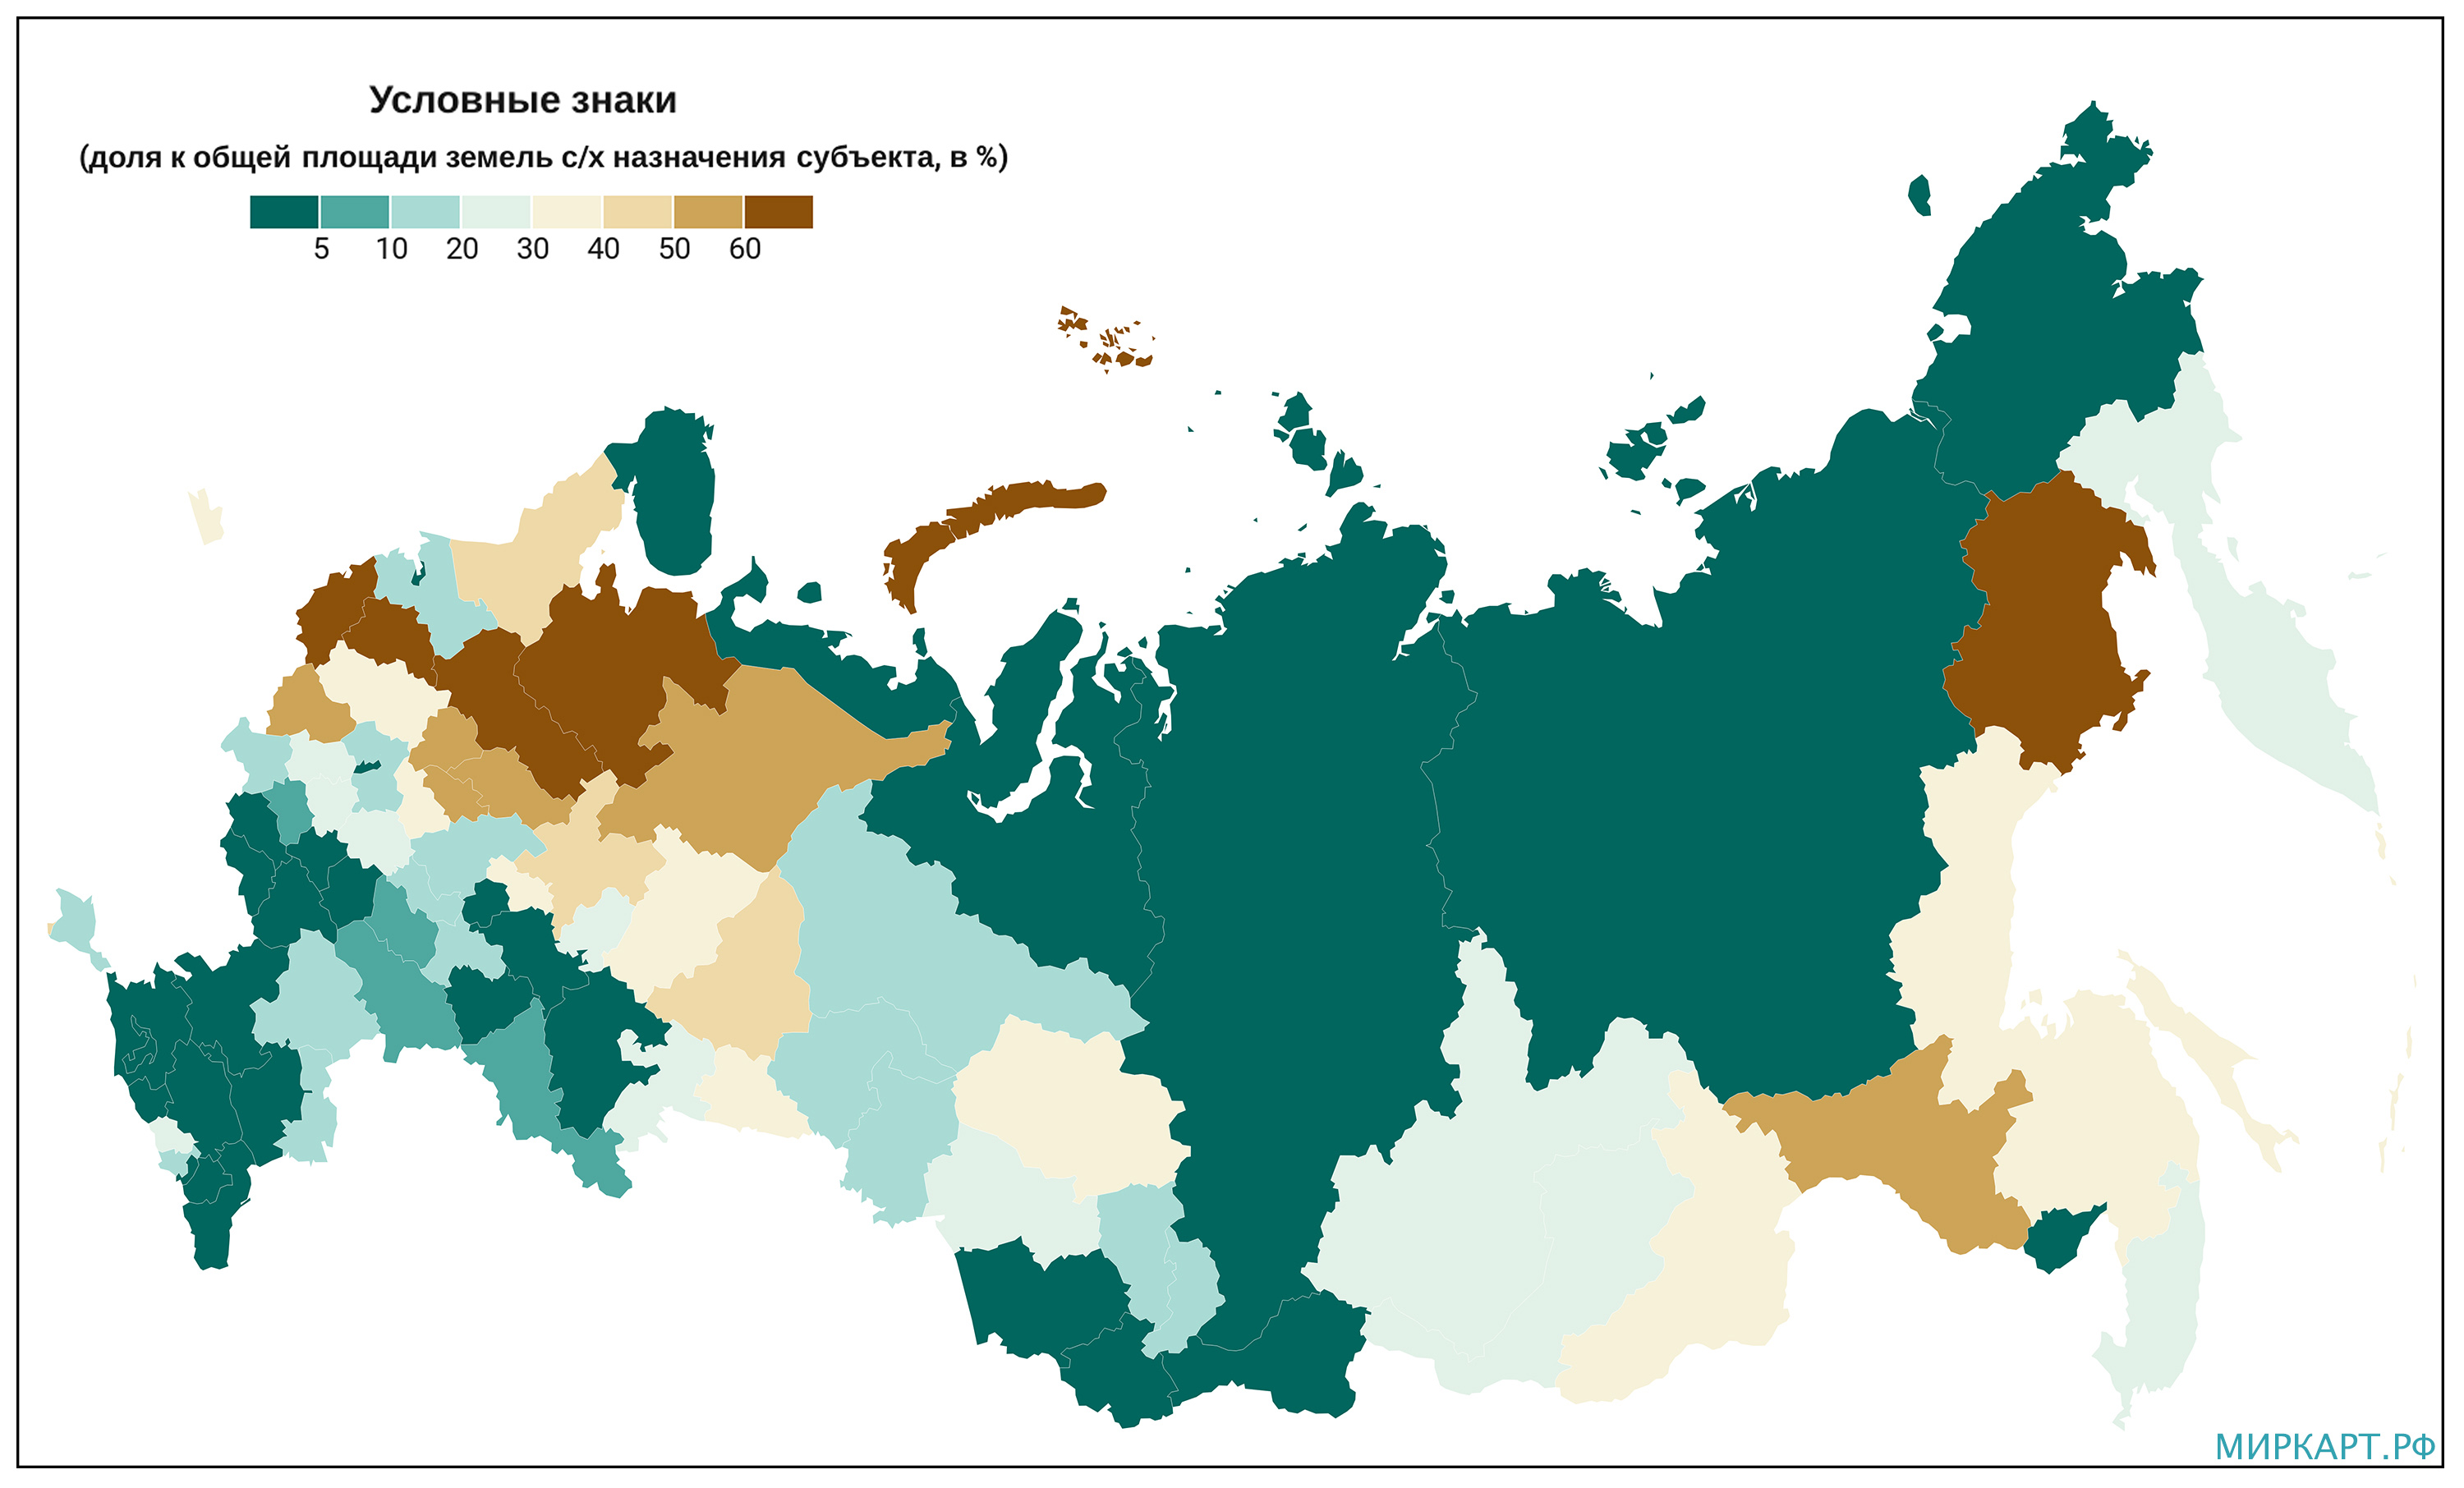 Неиспользуемые земли сельскохозяйственного назначения по регионам России в2019 году